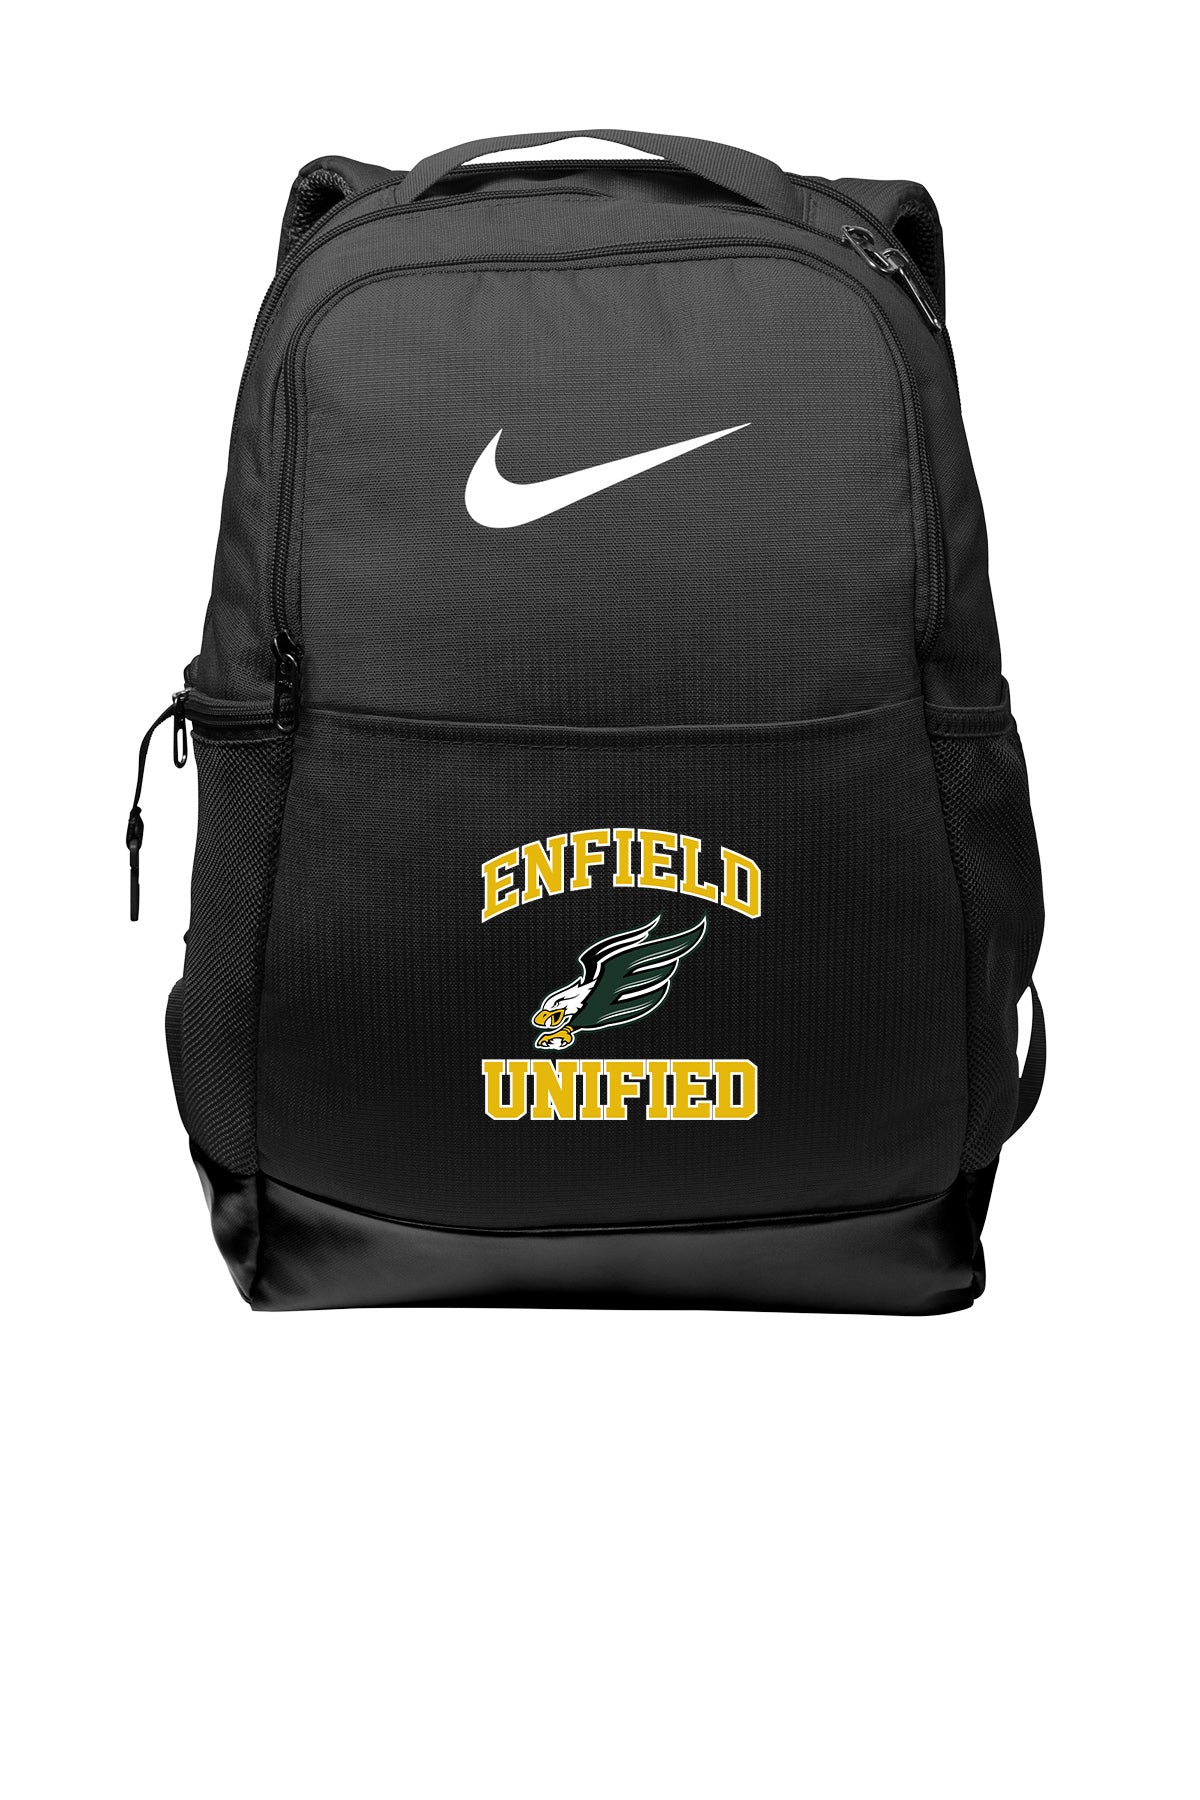 Unified Nike Backpack - NKDH7709